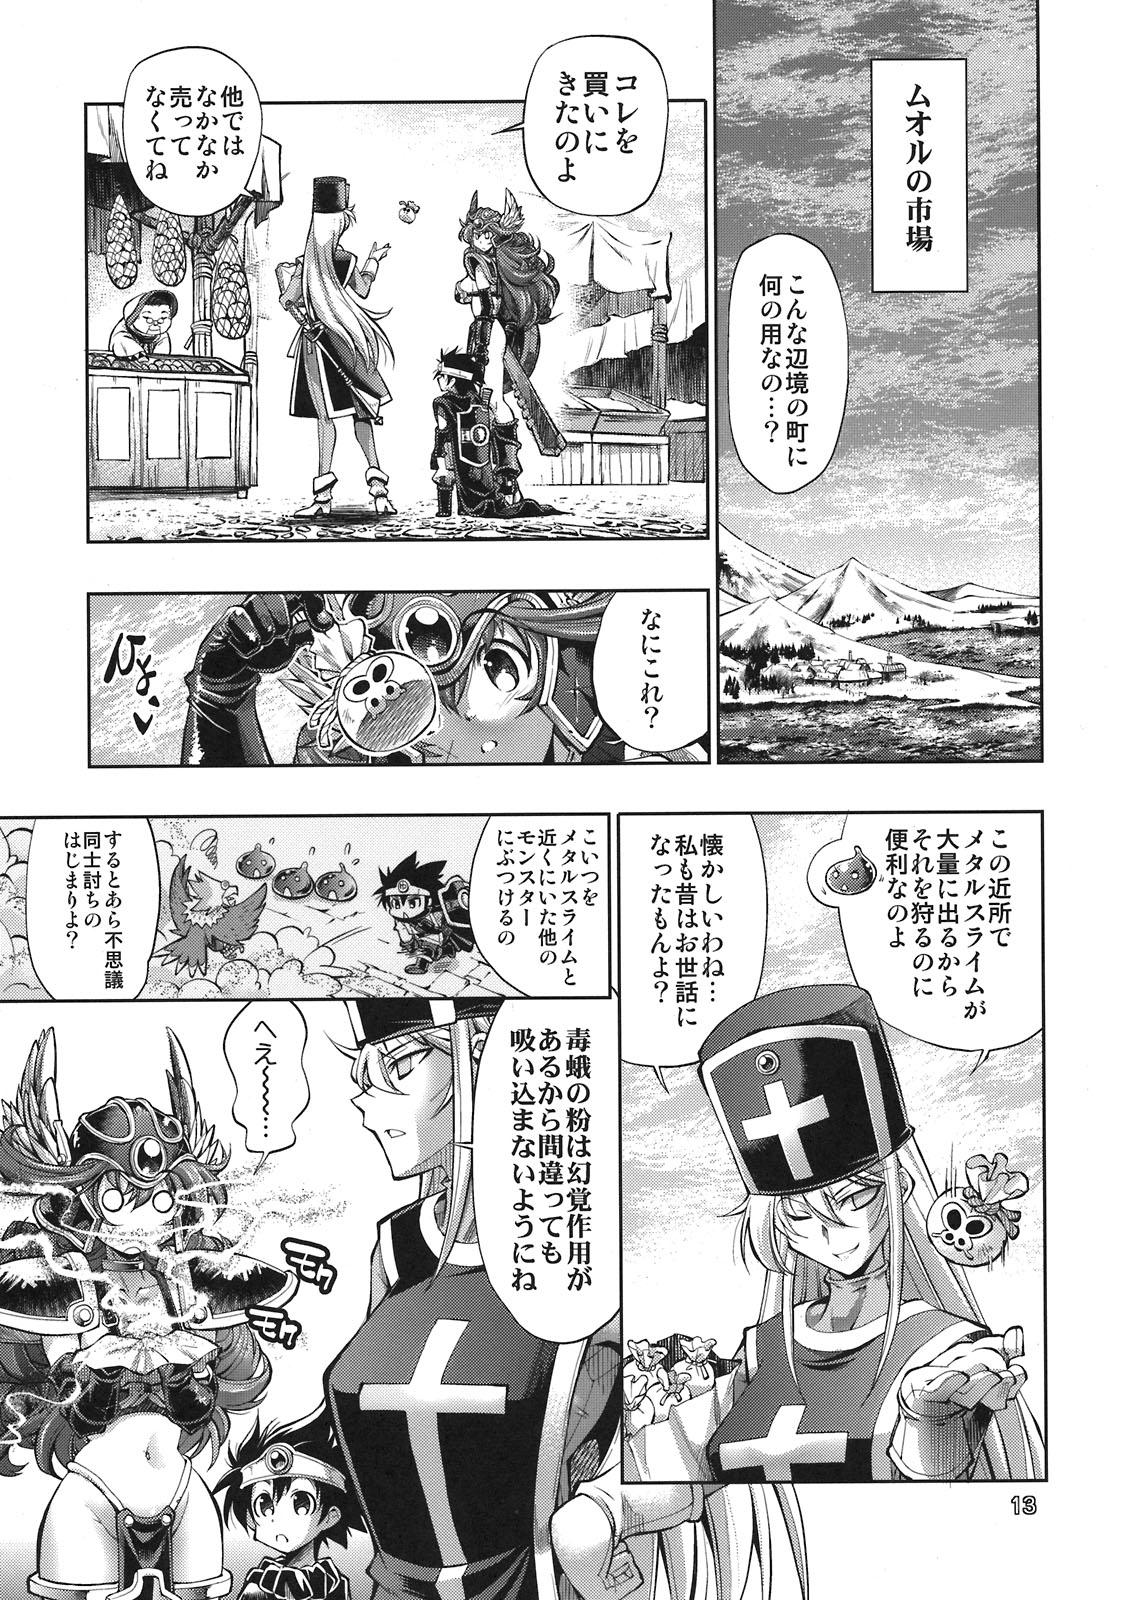 Pendeja Yuusha no Chousenjou 4 Yoroichuu - Dragon quest iii Young Tits - Page 10